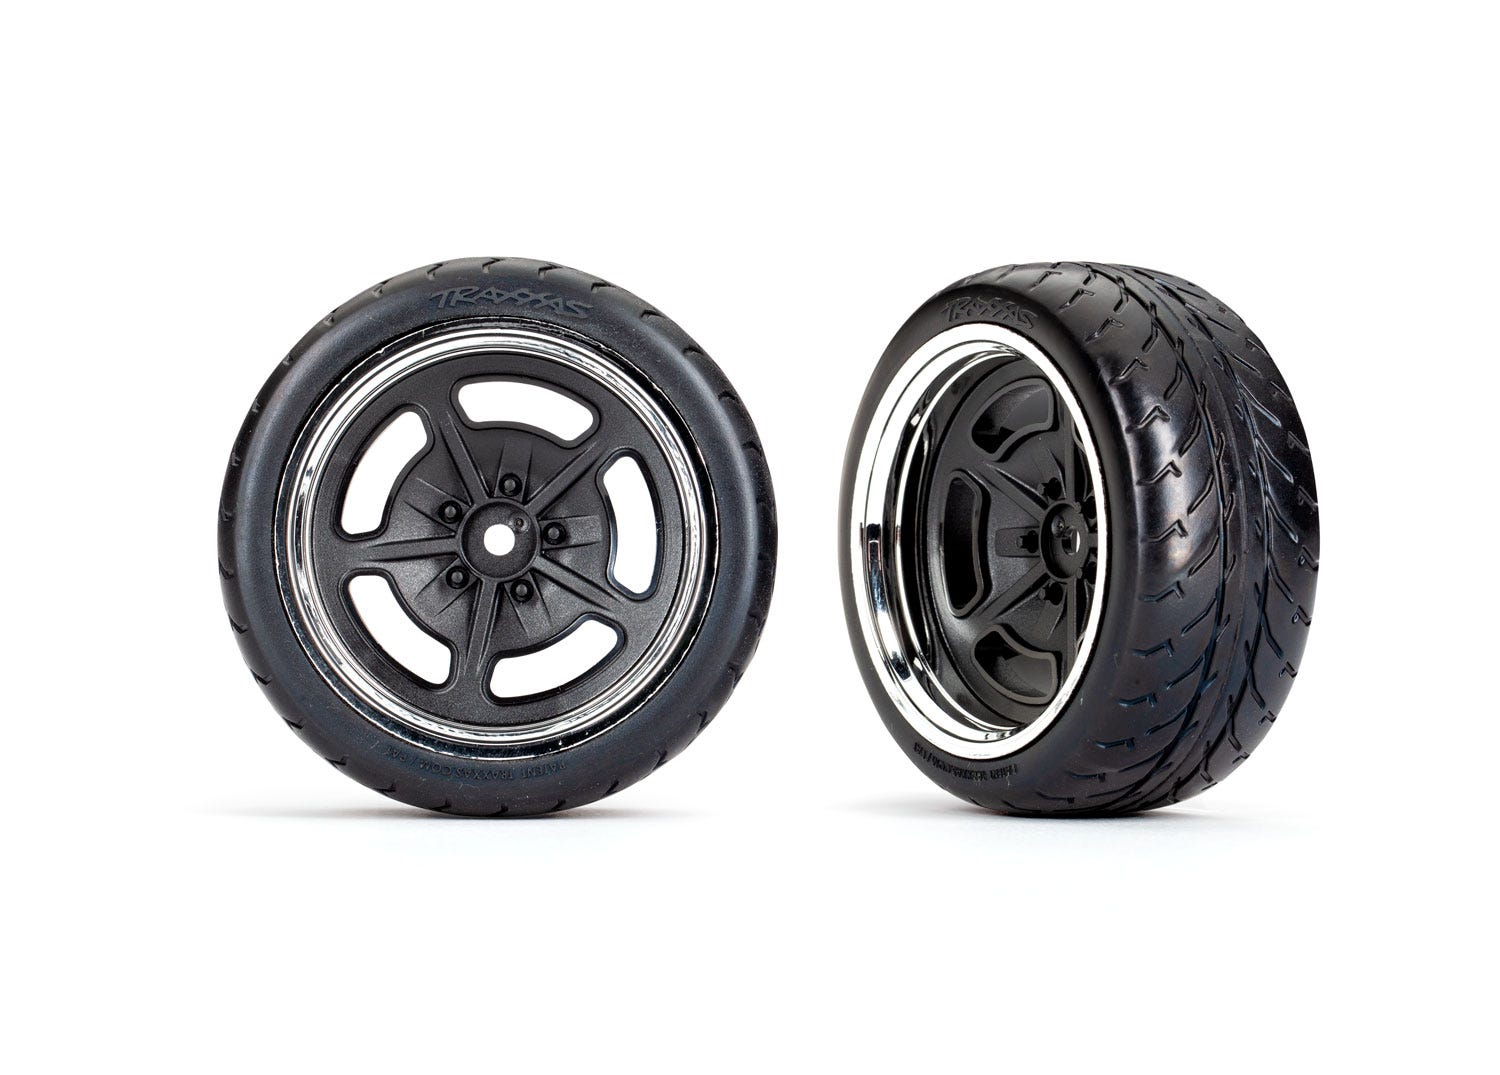 Neumáticos y ruedas Traxxas Hot Rod, negro y cromo